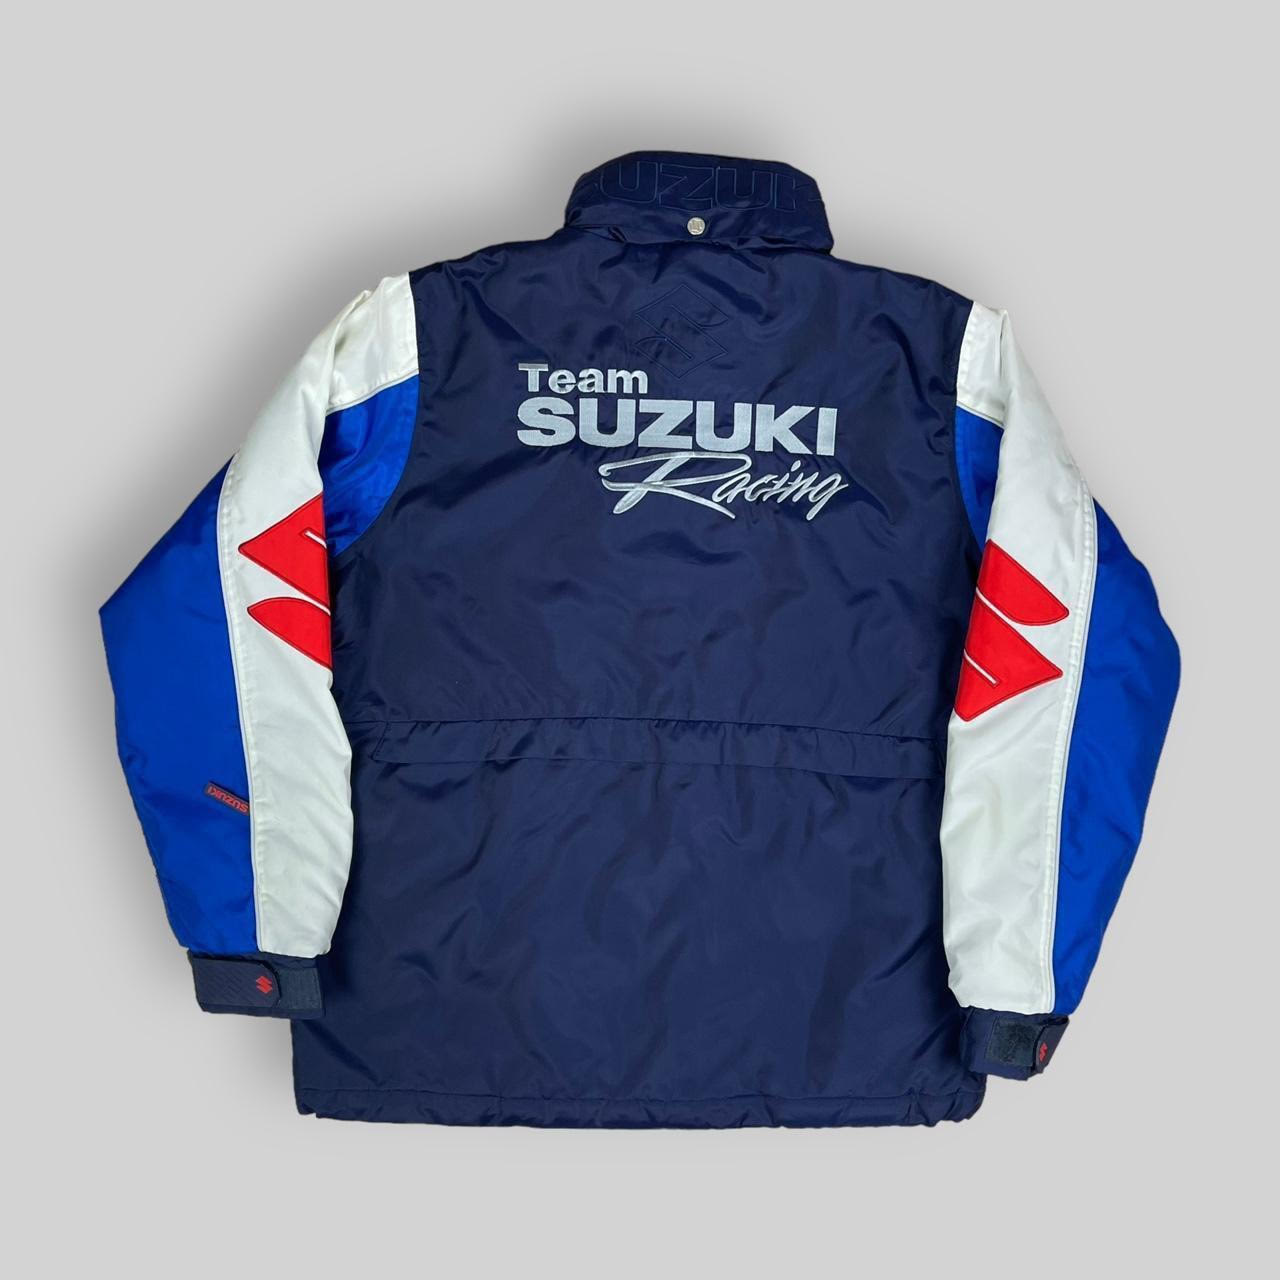 Suzuki Racing Y2K Jacket (Large)